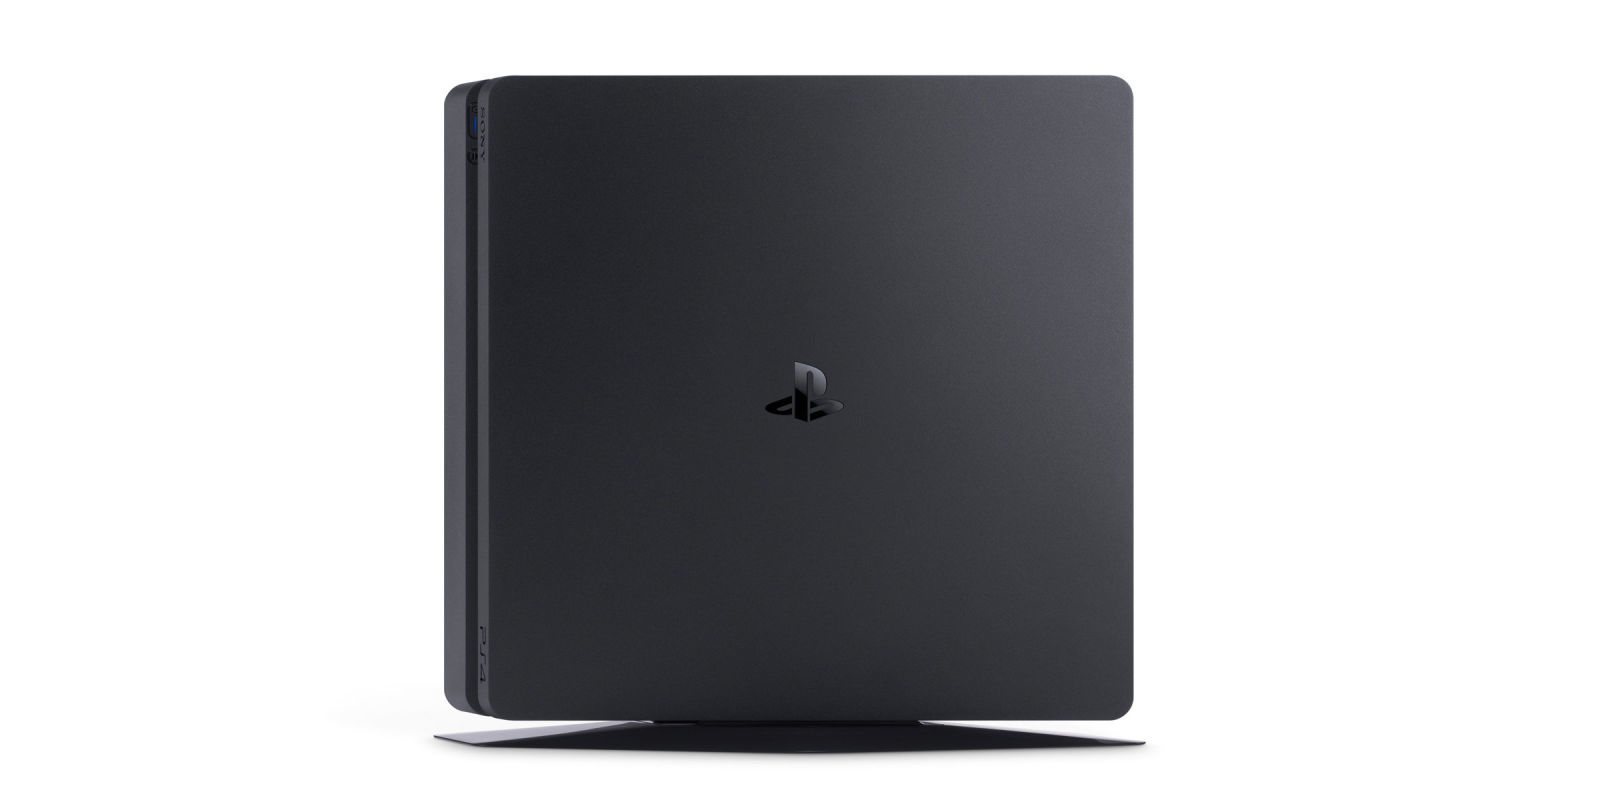 PlayStation 4 ya supera los 82 millones de consolas distribuidas